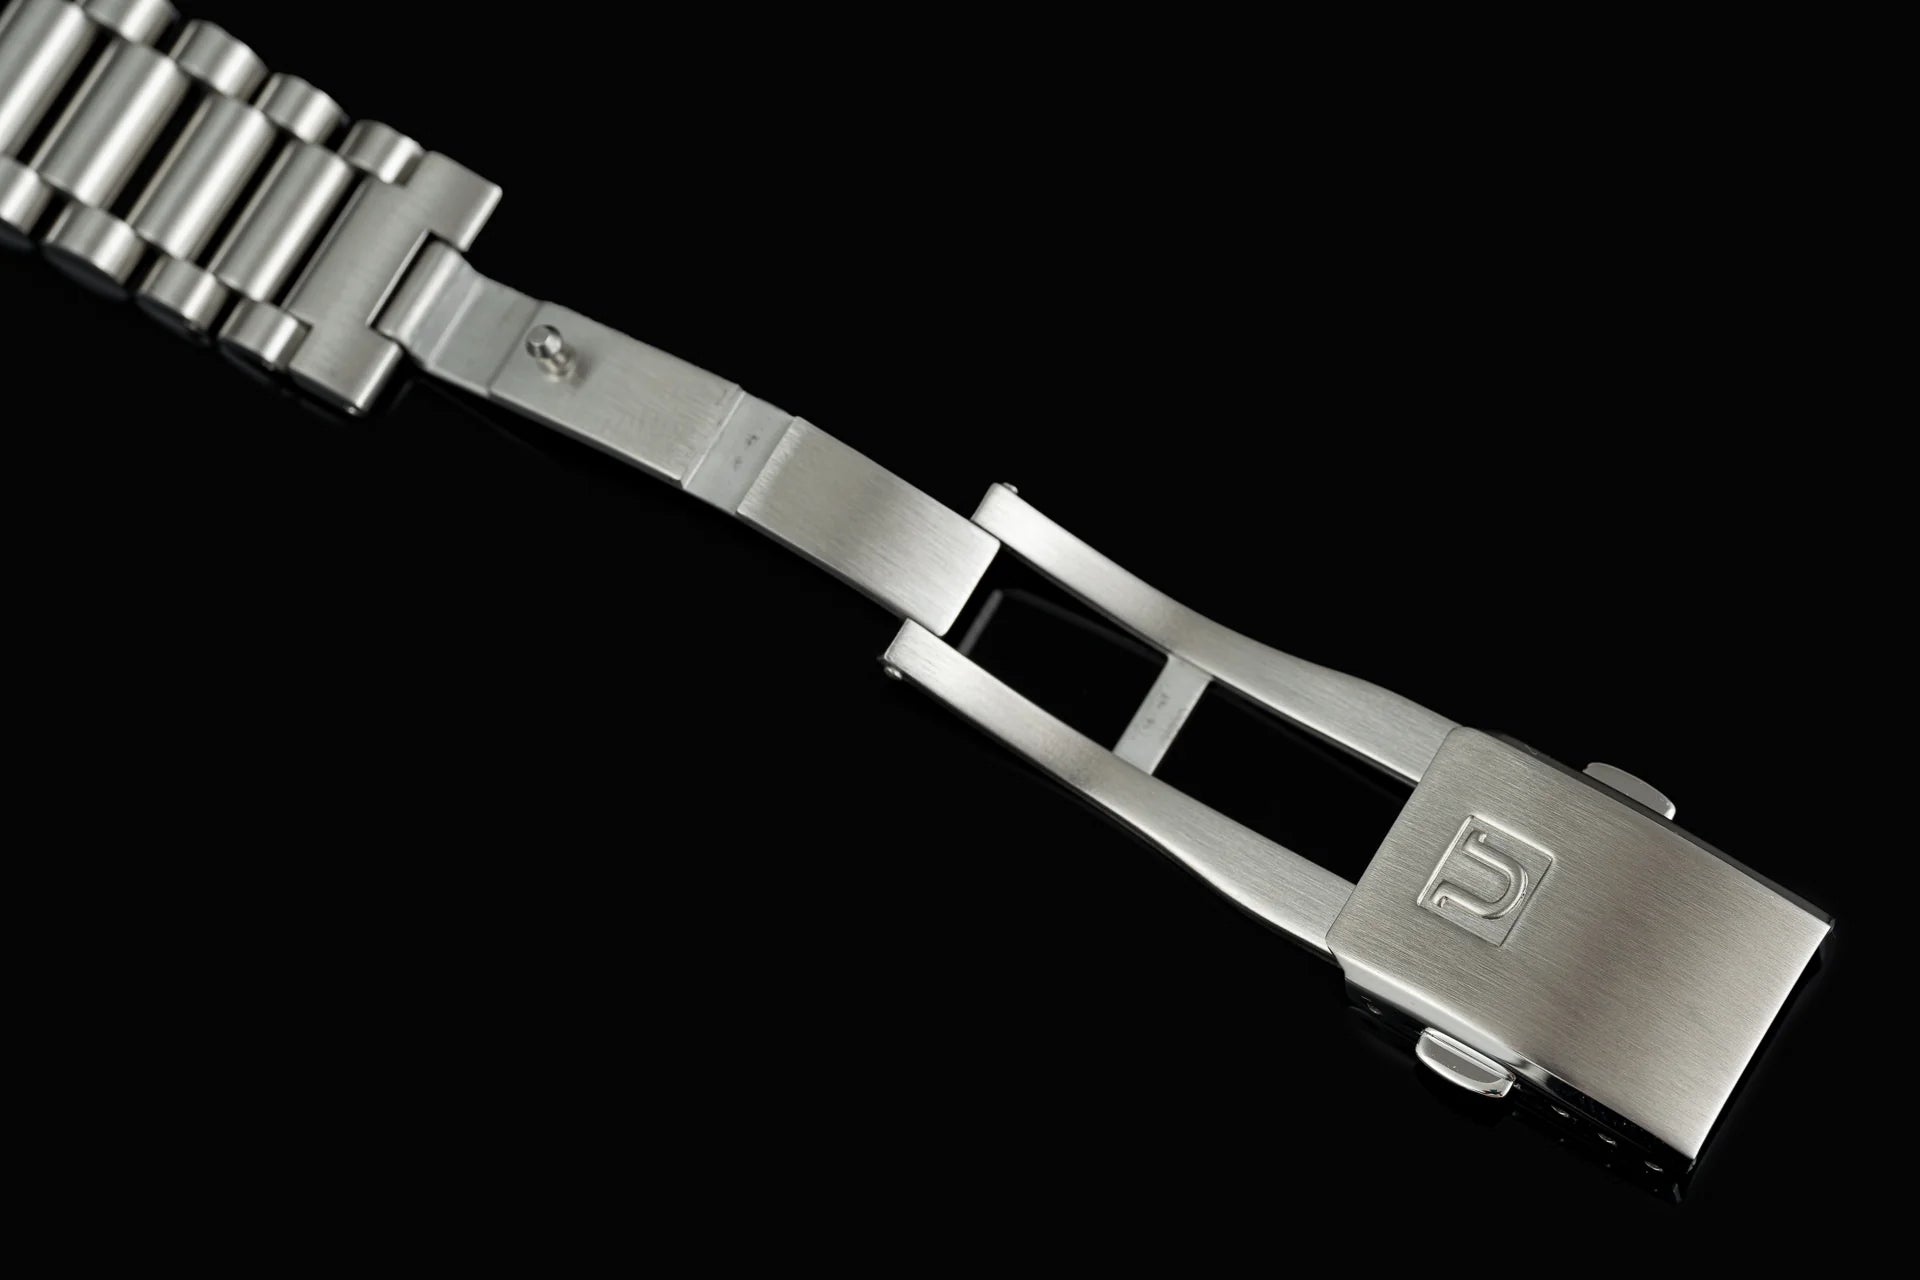 US1450 Lincoln Bracelet (Tudor Black Bay 54)